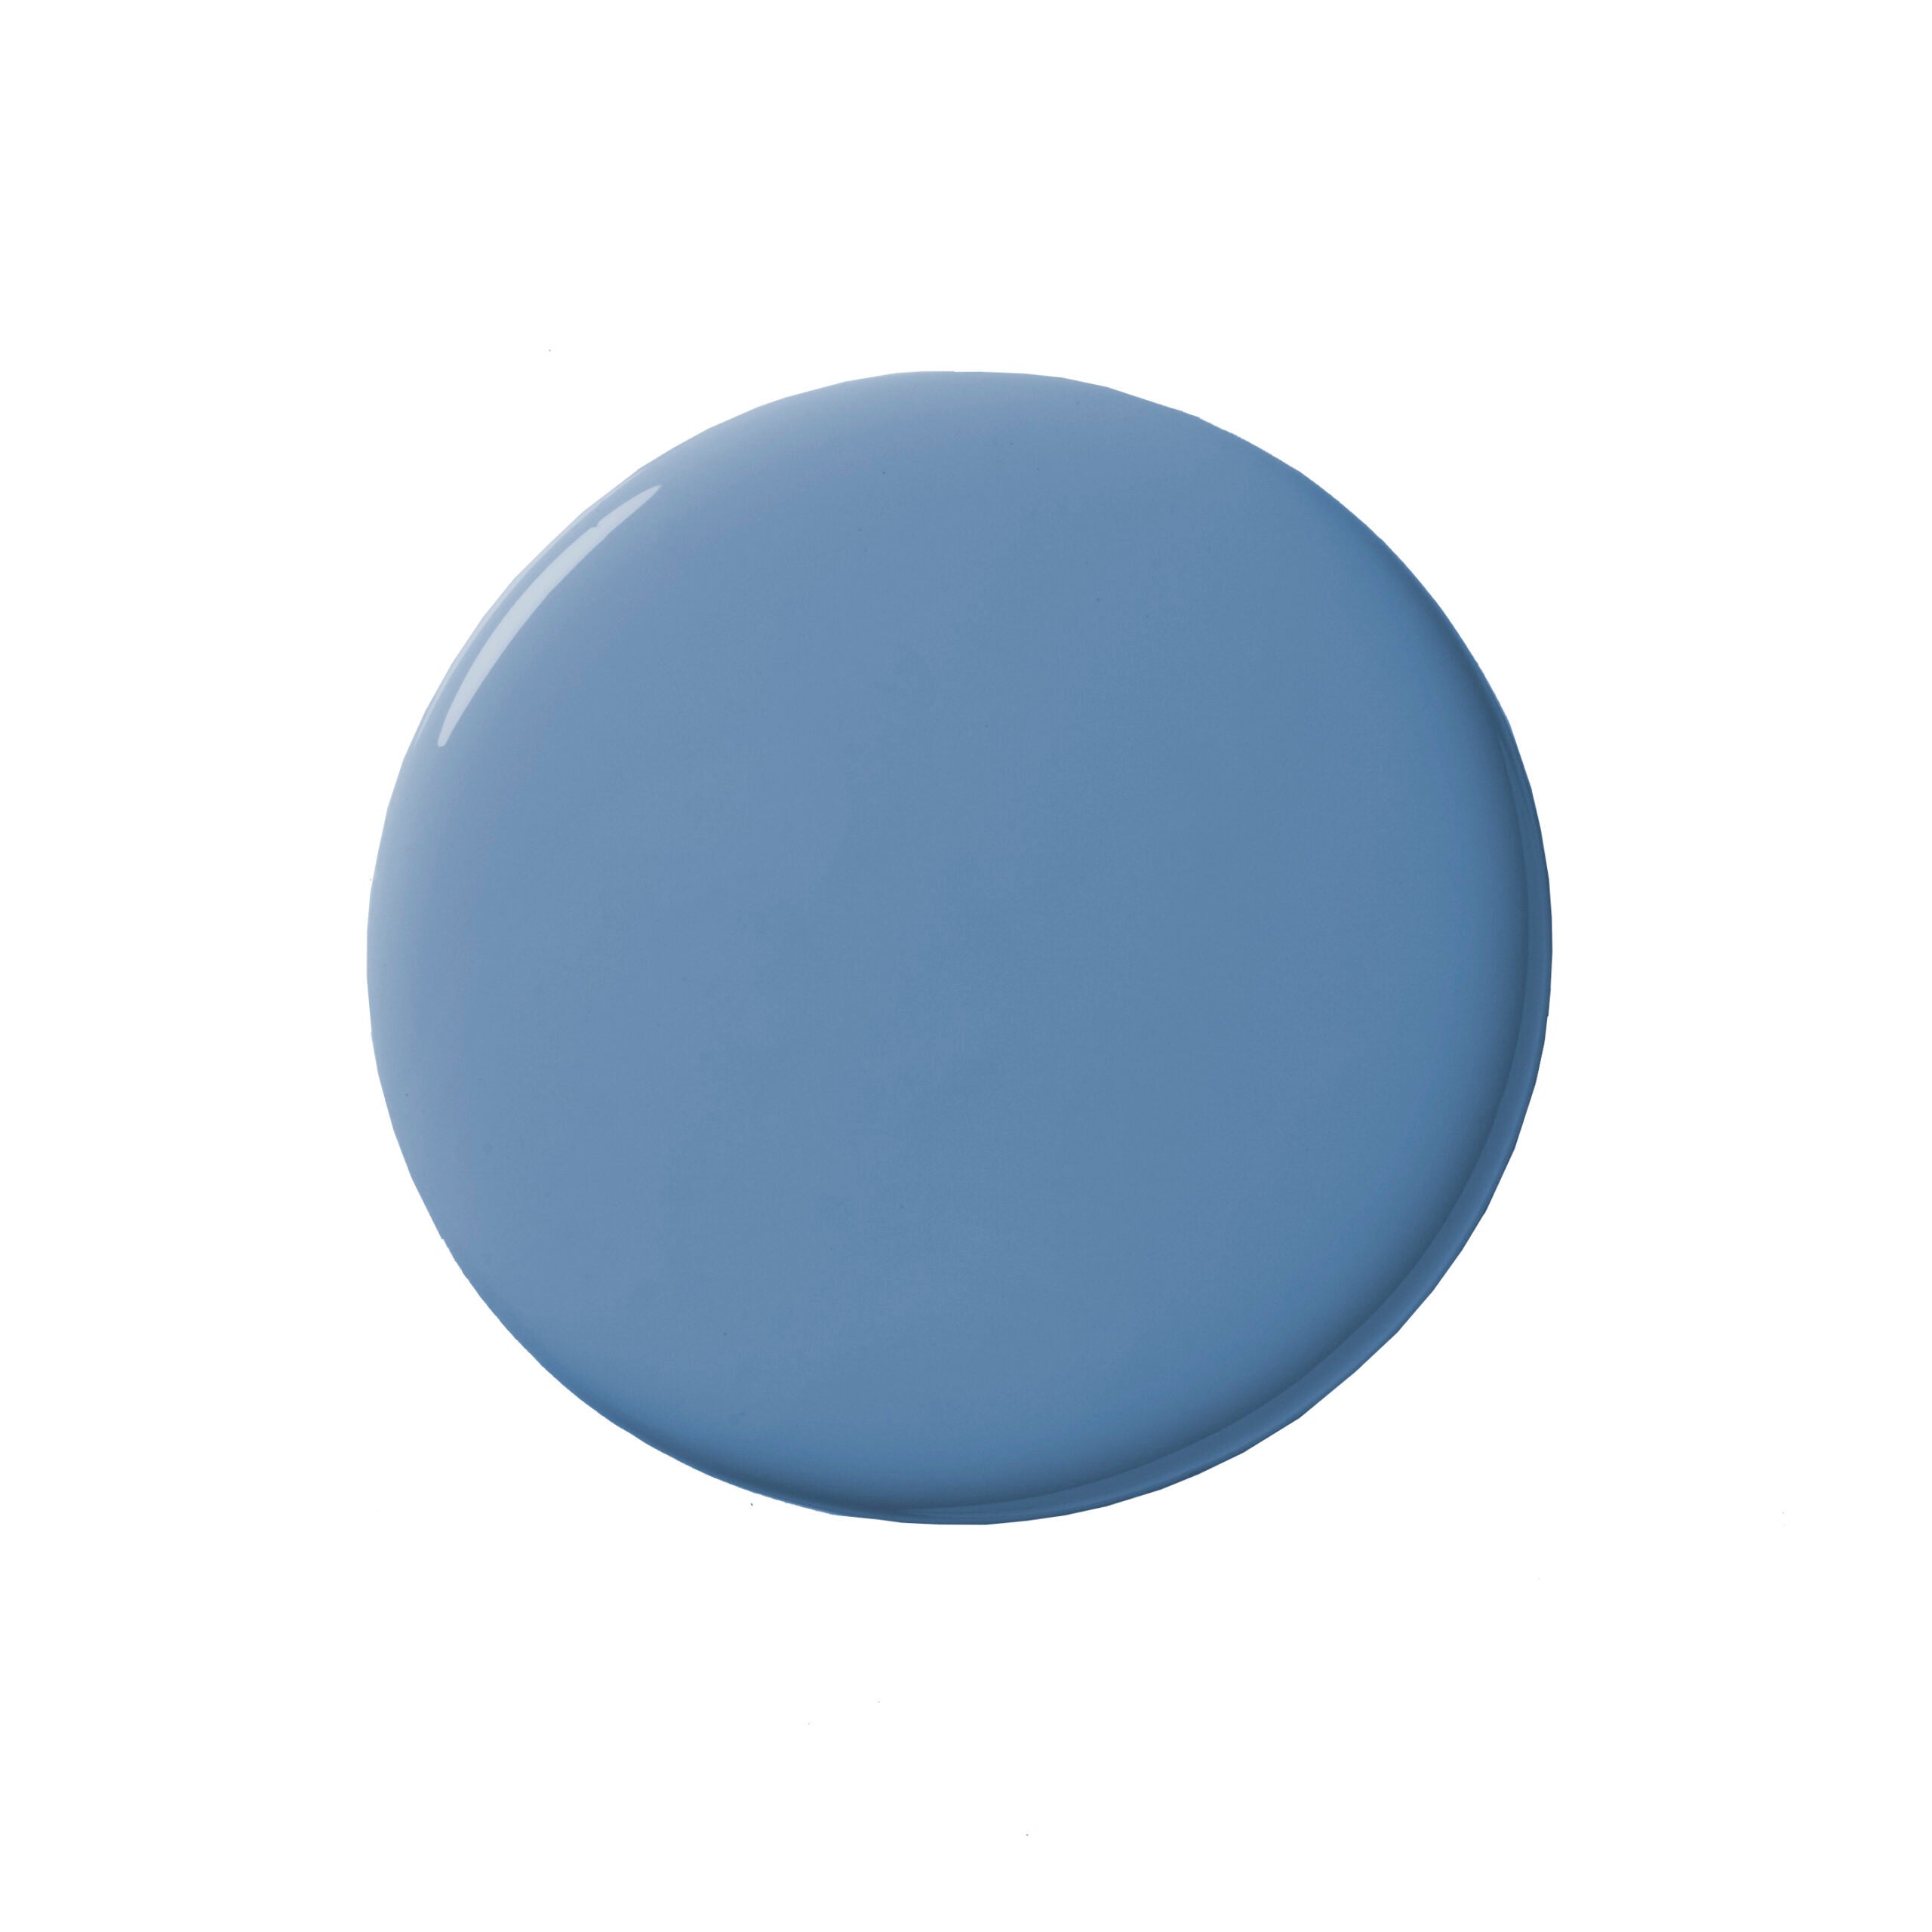 blue paint blob